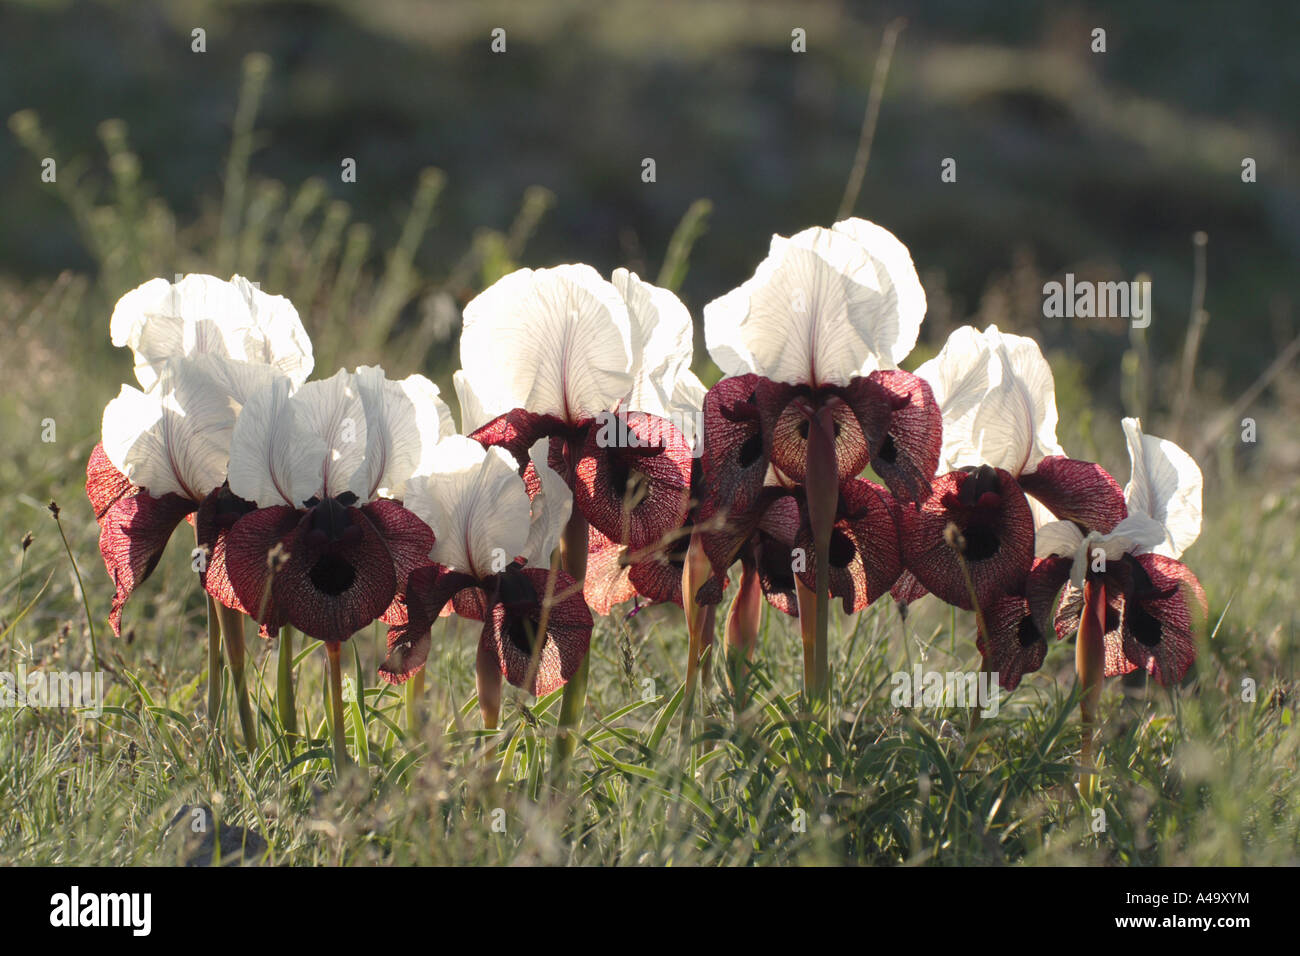 Iris (Iris iberica elegantissima), groupe de plantes fleuries en contre-jour, la Turquie, est de l'Anatolie, Ararat, Dogubayazit Banque D'Images